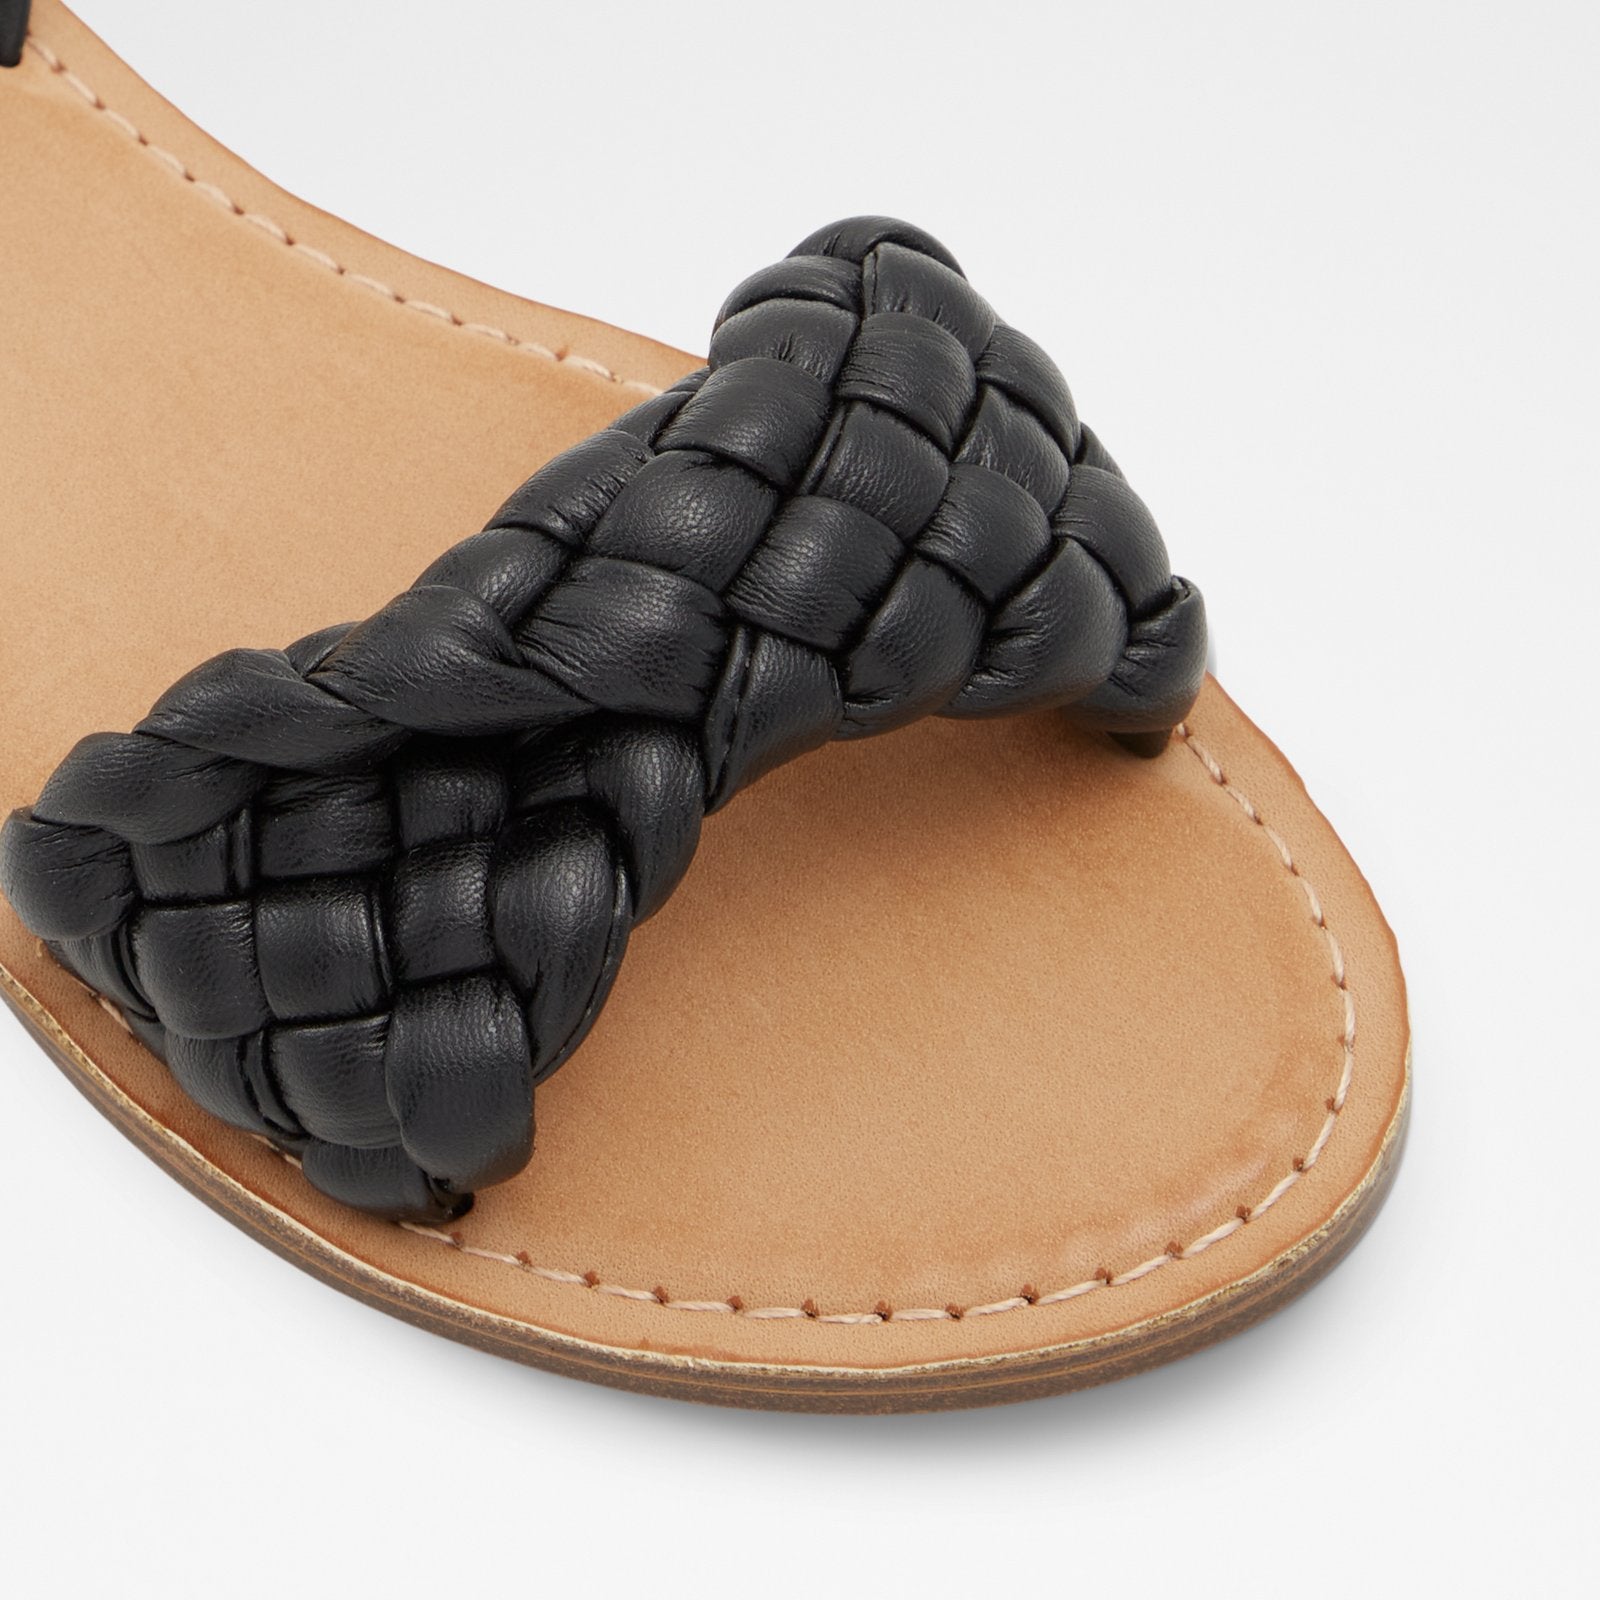 Tressa Women Shoes - Black - ALDO KSA